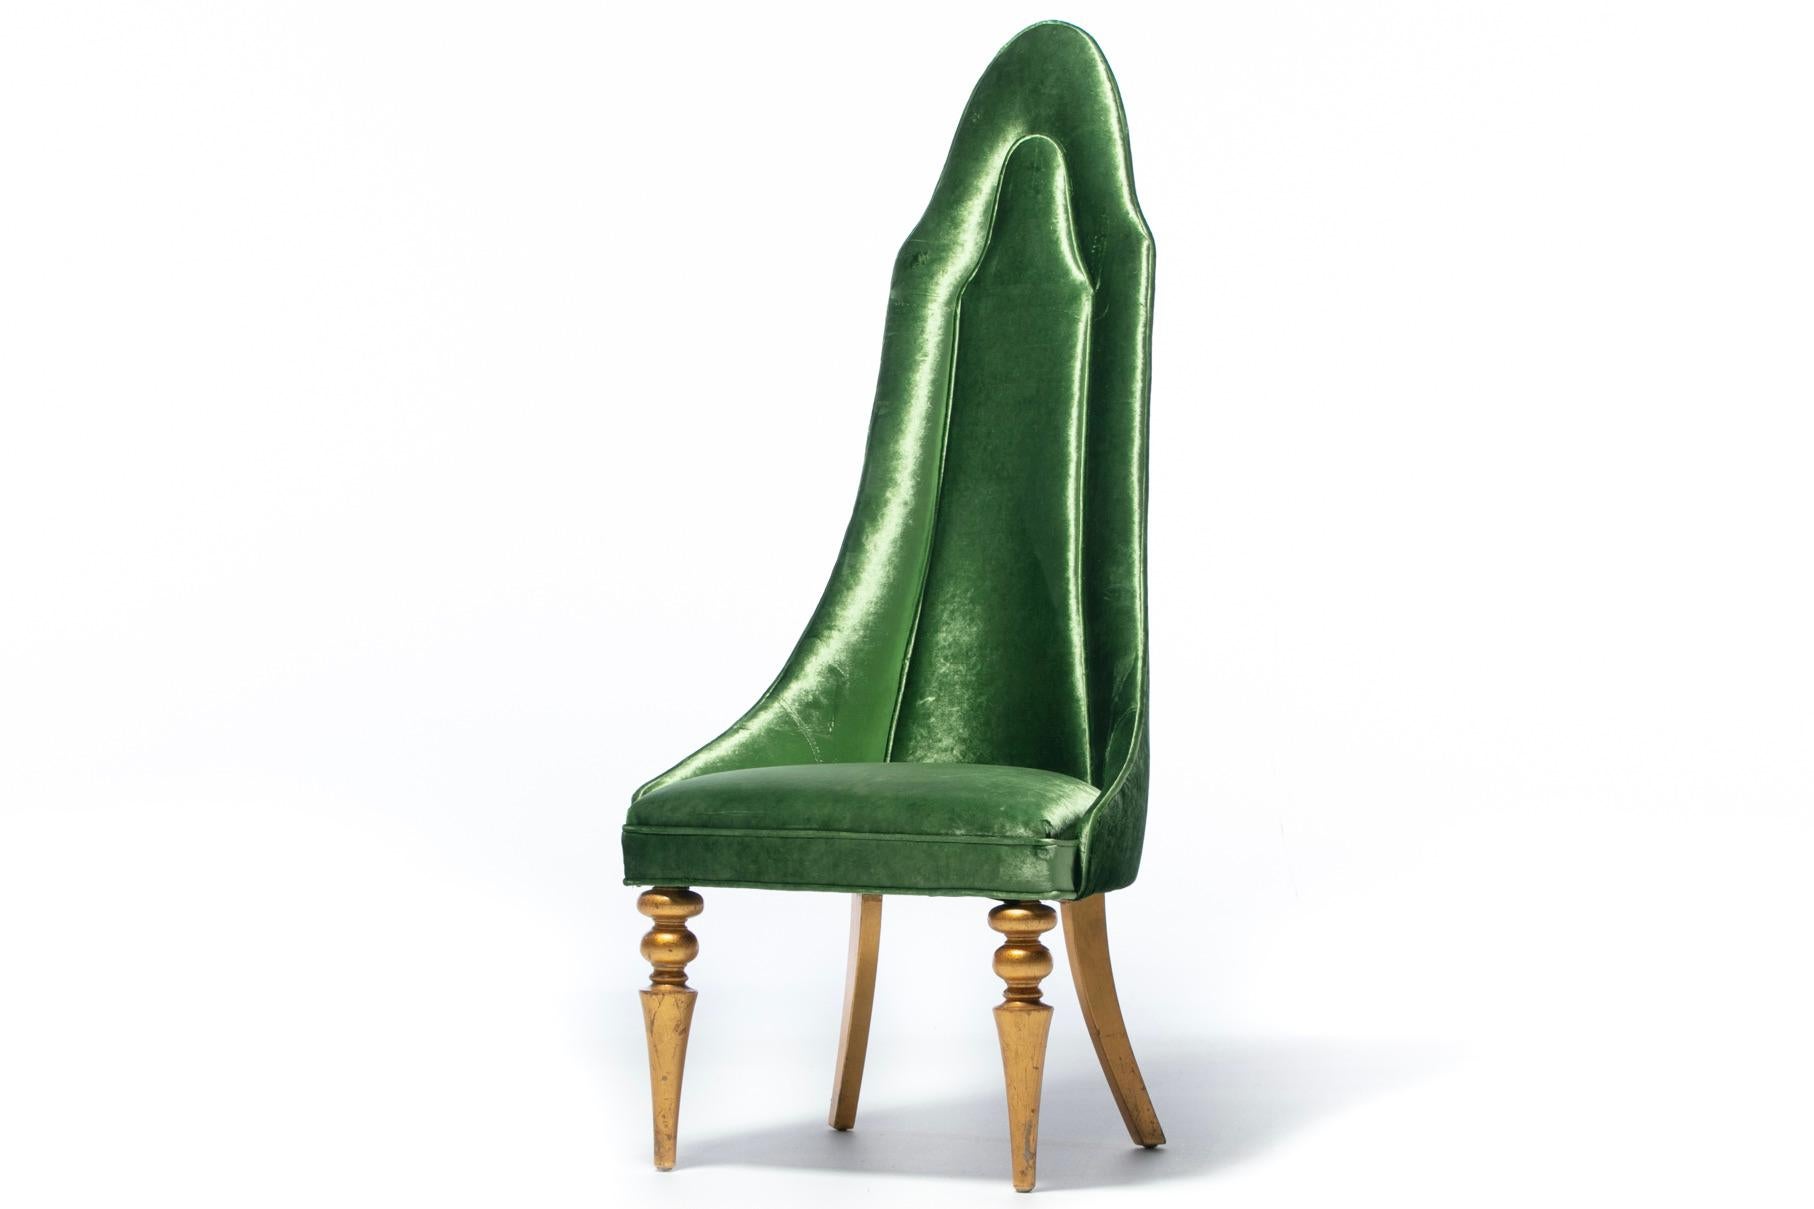 Ciao bella Italienisch Hollywood Regency Lippenstift Stuhl in grünem Samt gepolstert mit Original-Blattgold spindled Beine. Beistellstuhl. Bürostuhl. Beistellstuhl. Die dramatisch hohe Rückenlehne ist kanalisiert, geschwungen und rahmt einen in